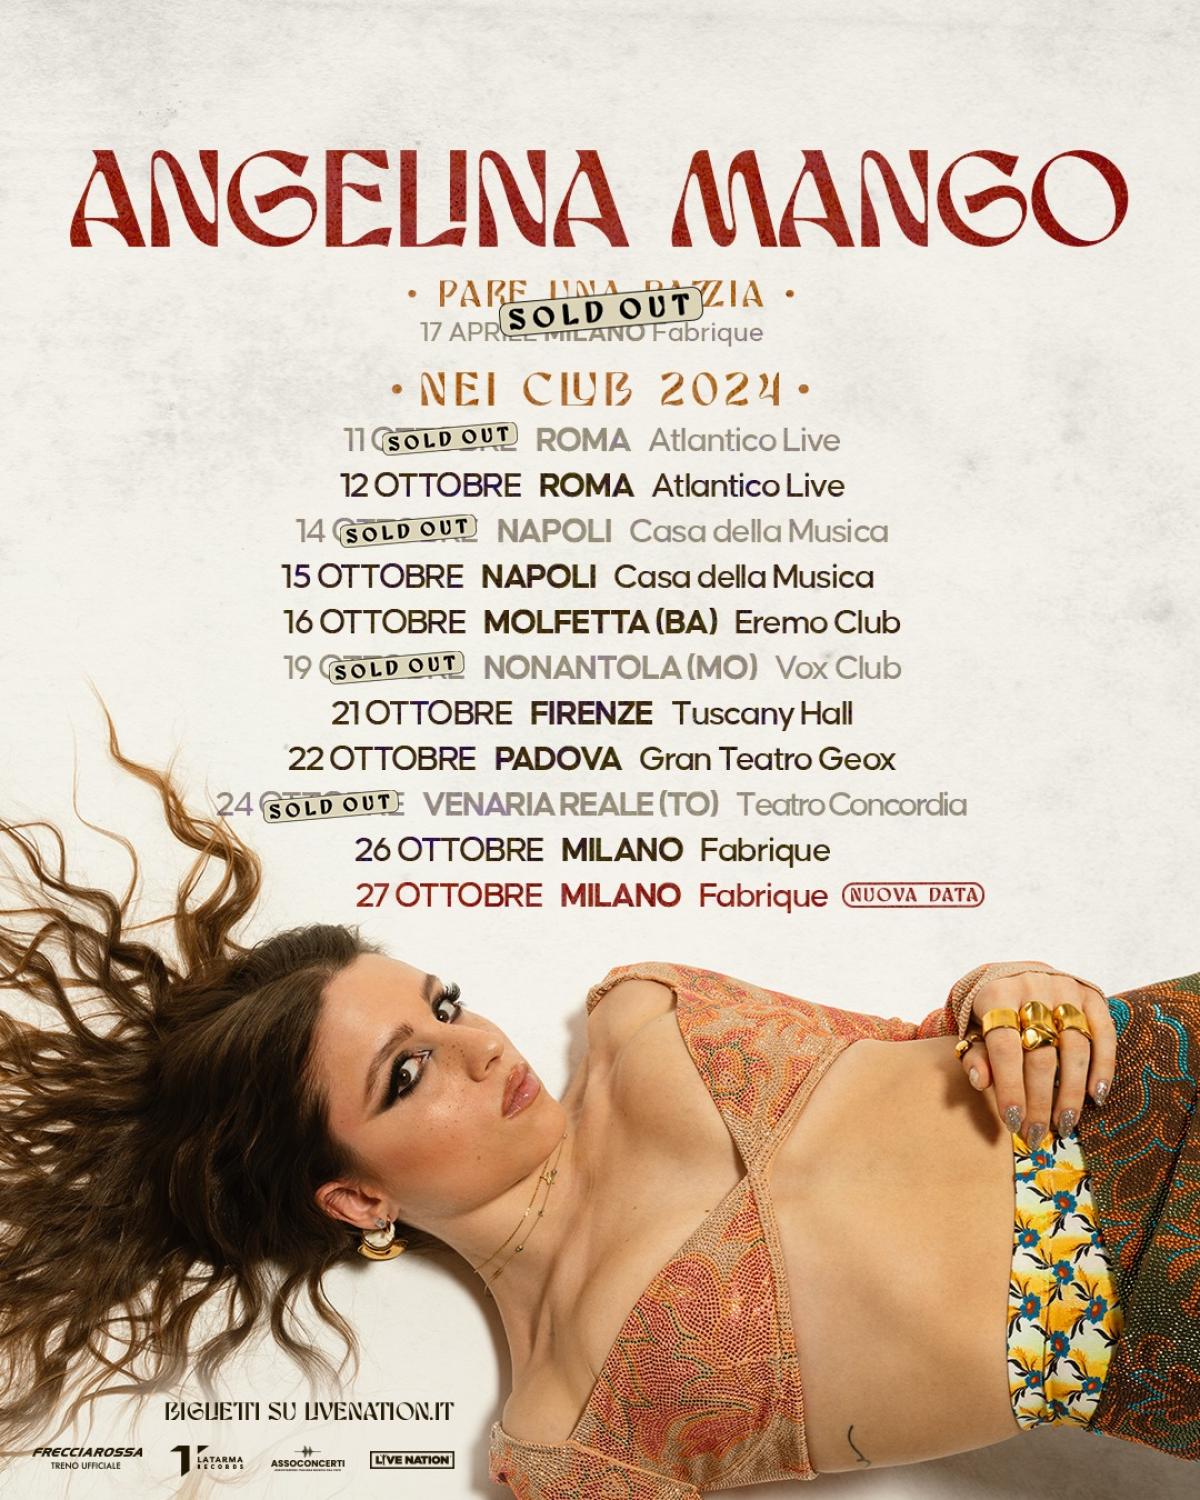 Angelina Mango en Fabrique Milano Tickets